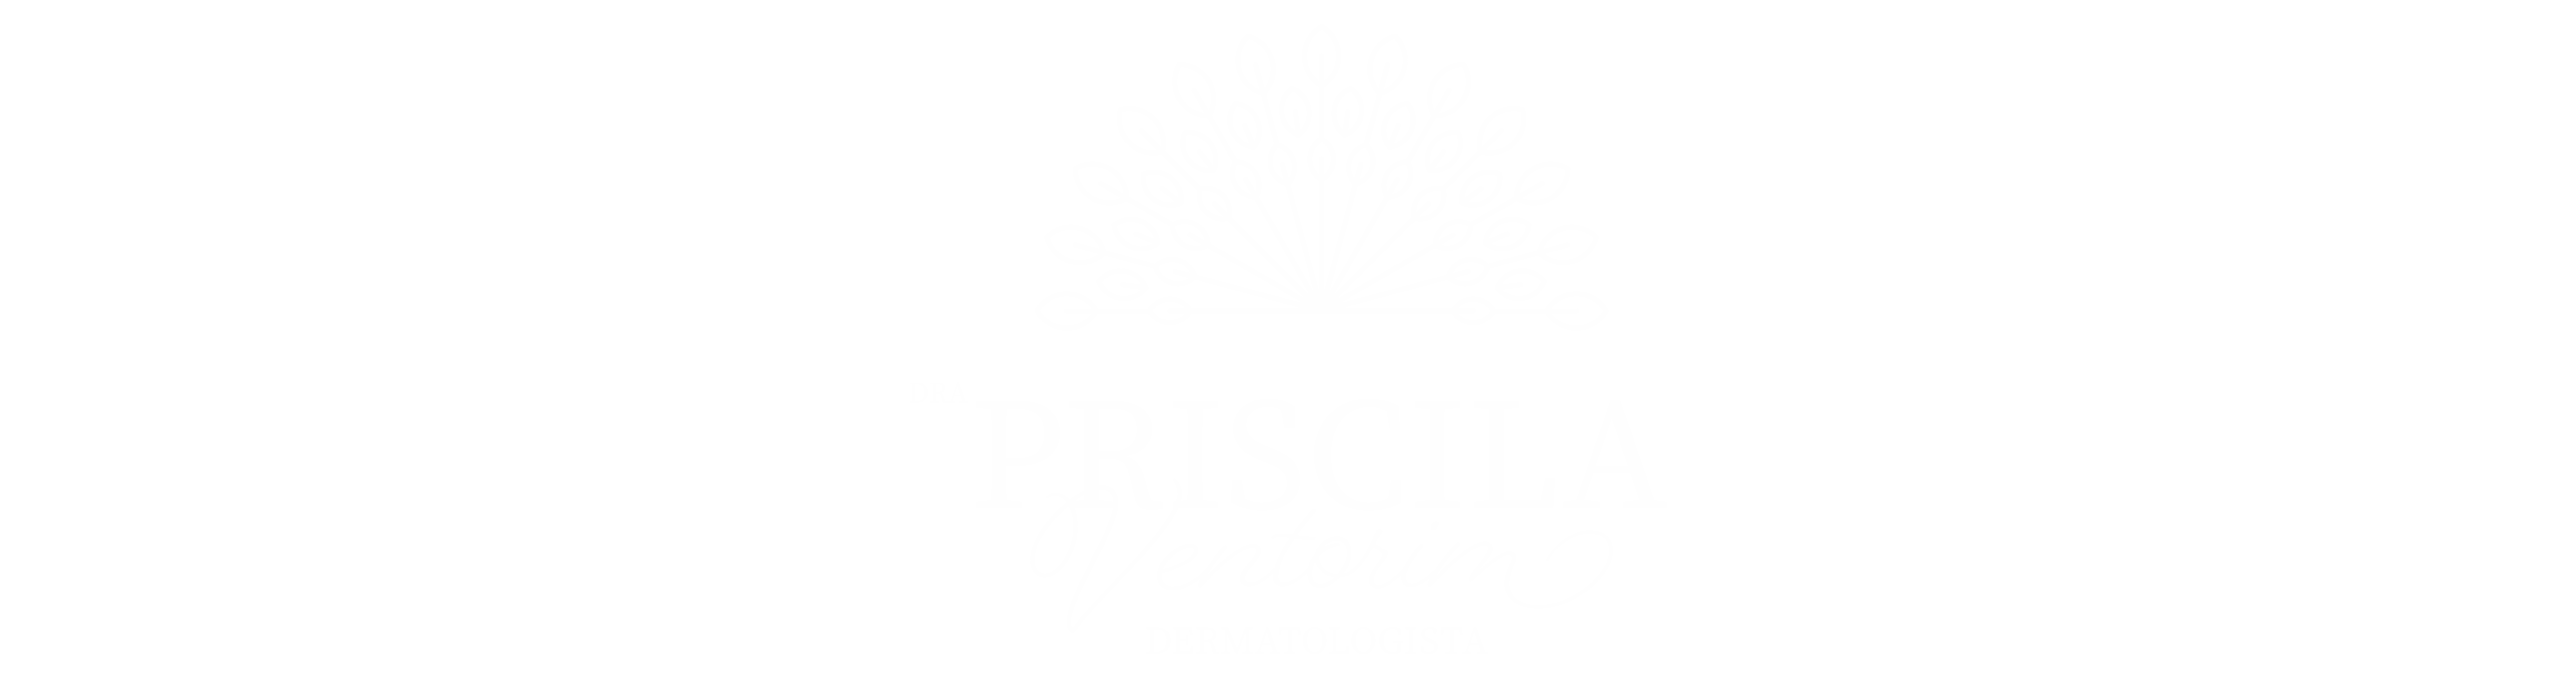 Priscila Ventorim